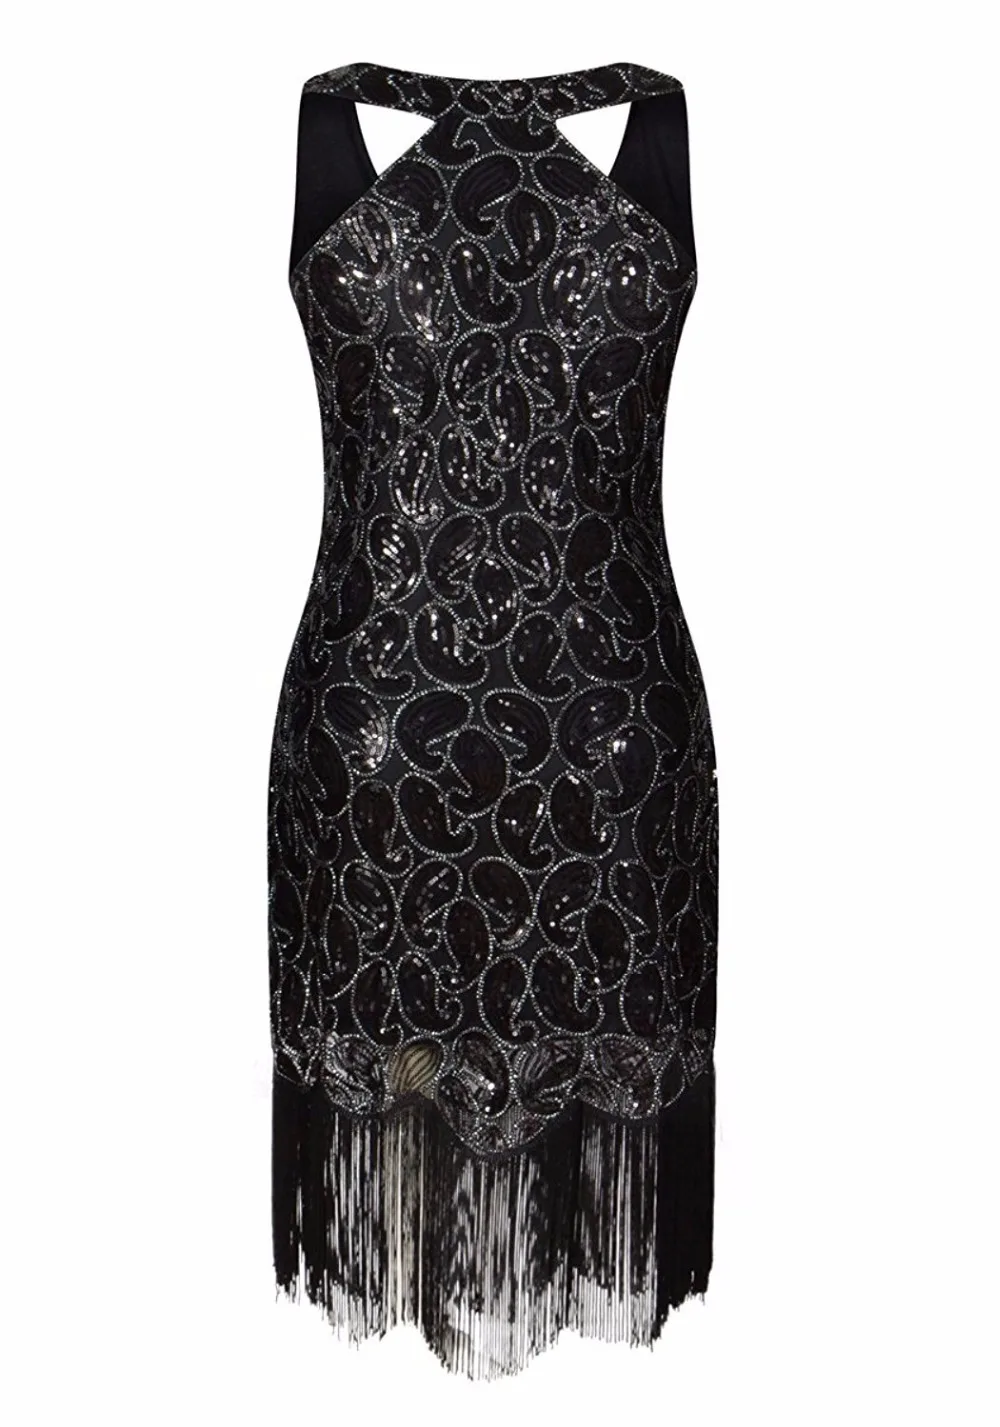 Женское платье 1920s с блестками и узором пейсли, без рукавов, с оборкой на спине, черное, золотое, сексуальное, с бахромой, вечерние платья Great Gatsby